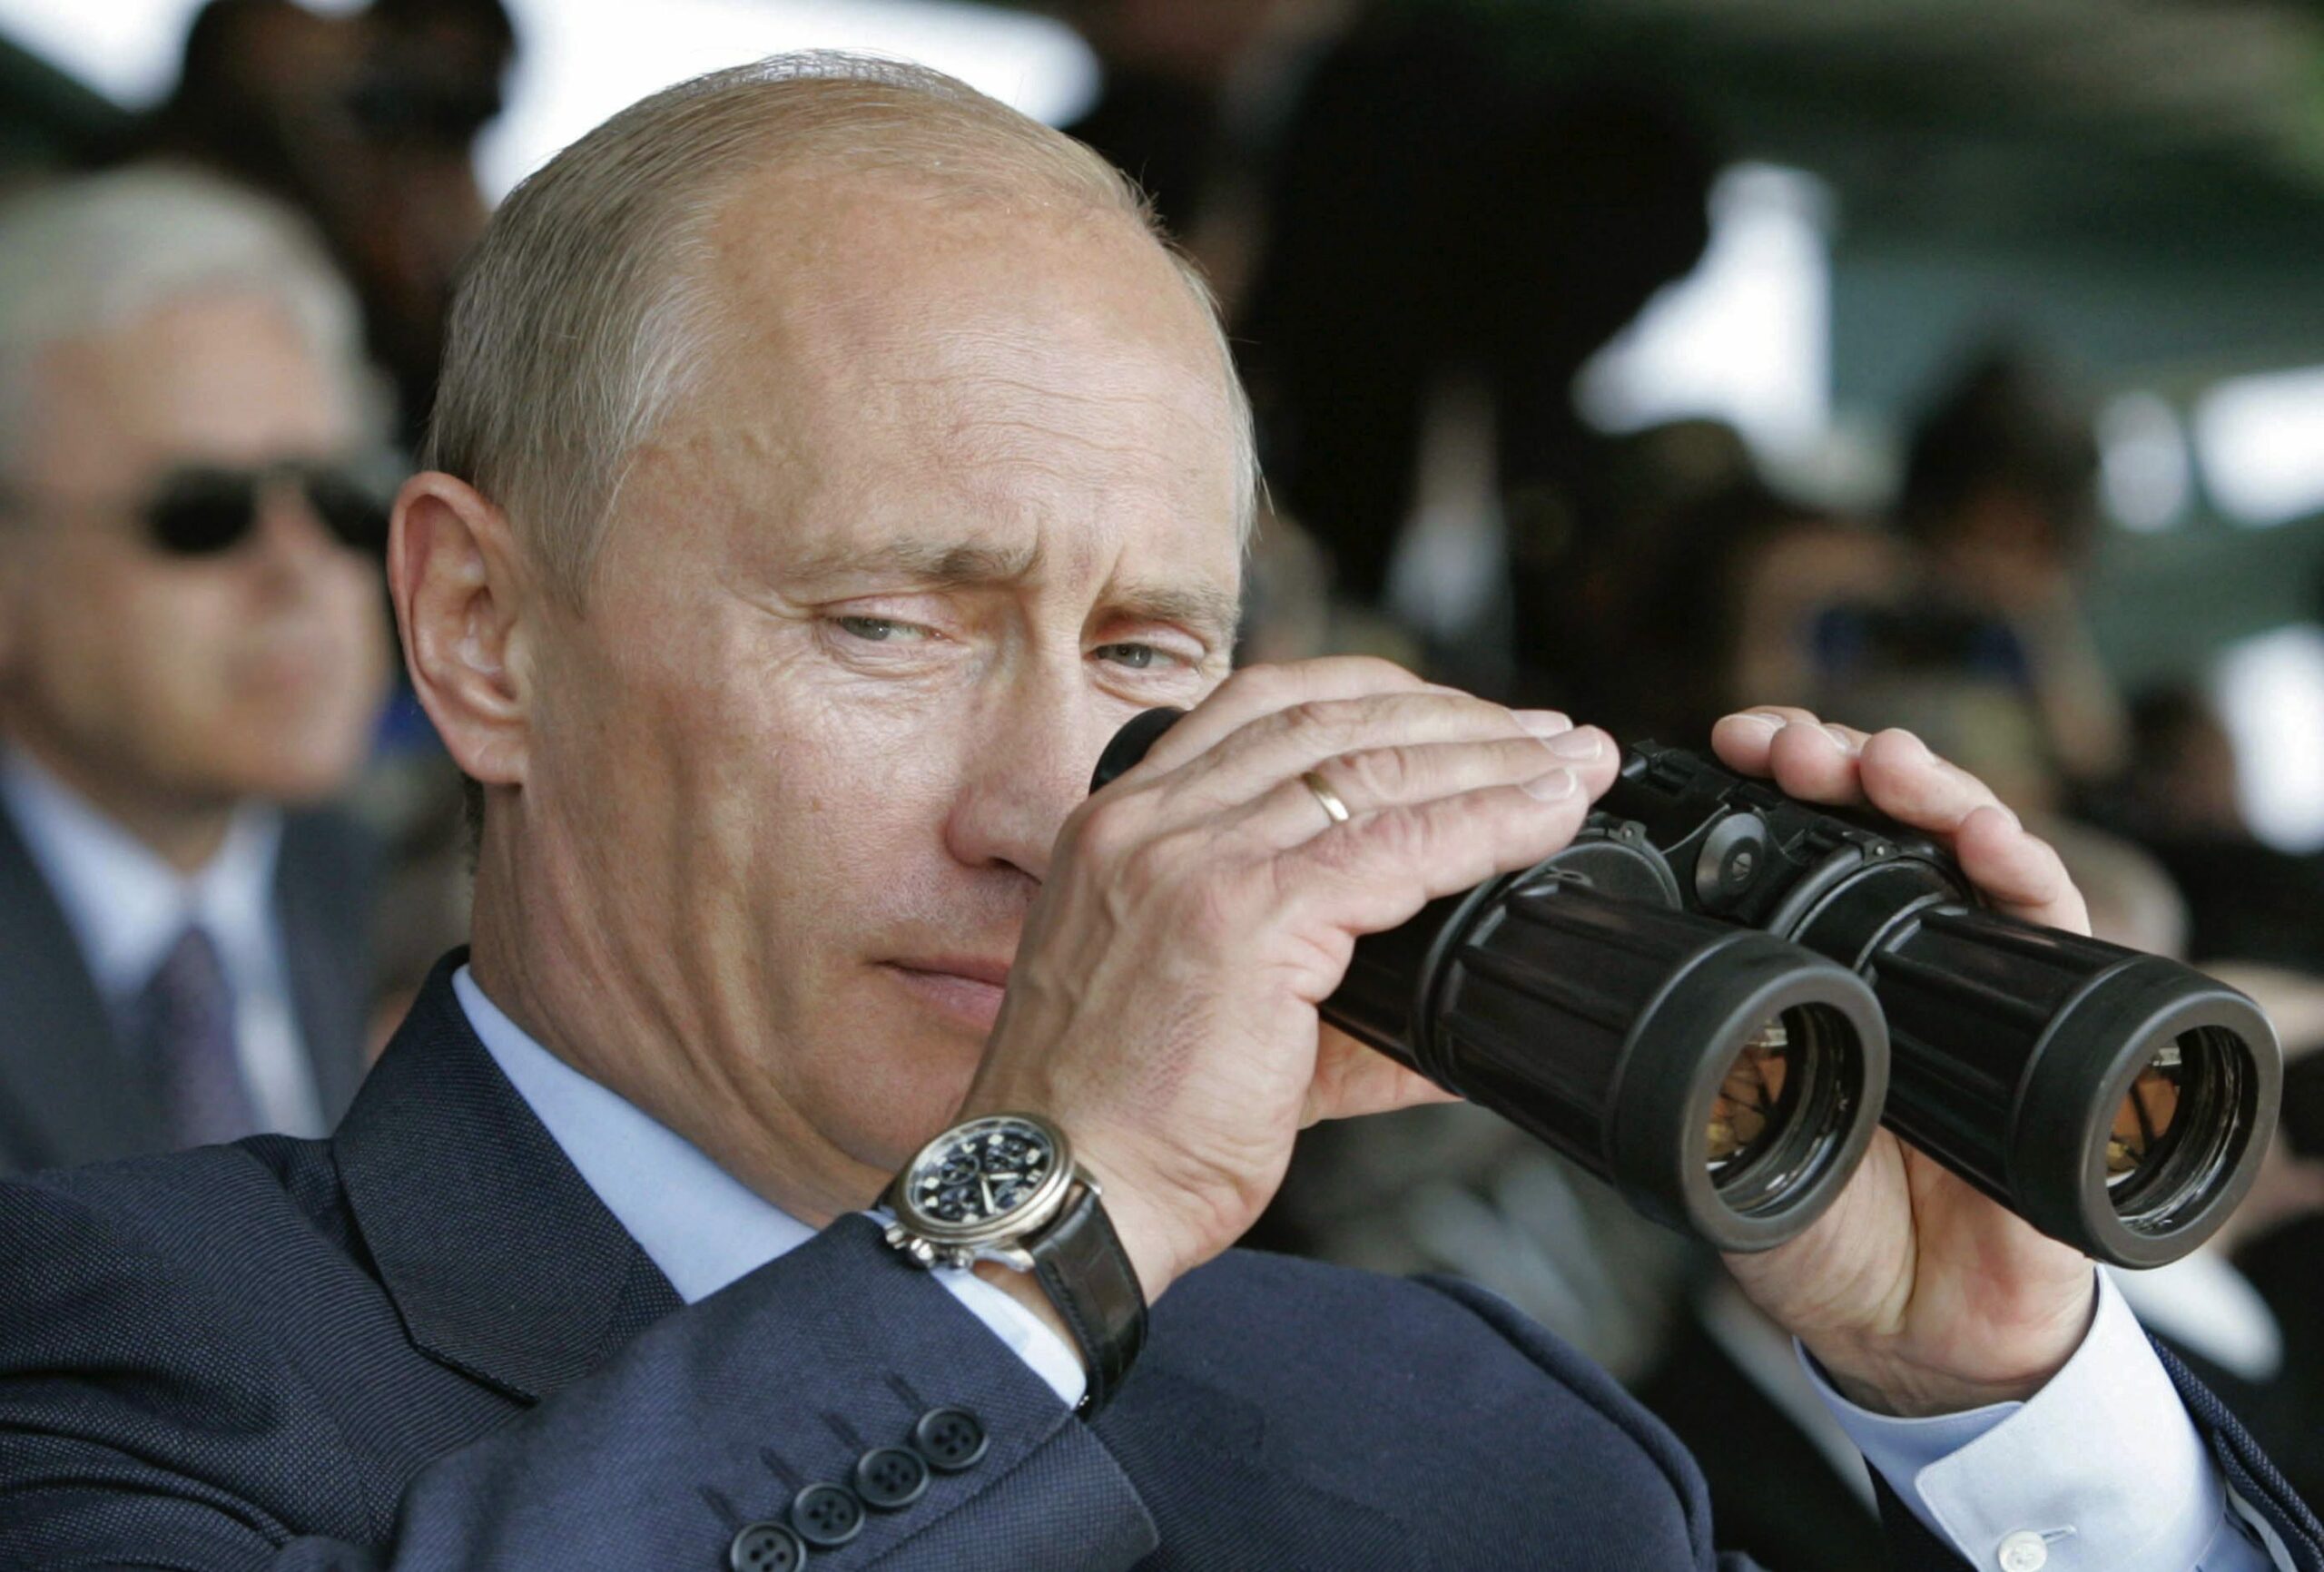 Ceasurile lui Putin Sursa foto Brookings Institution